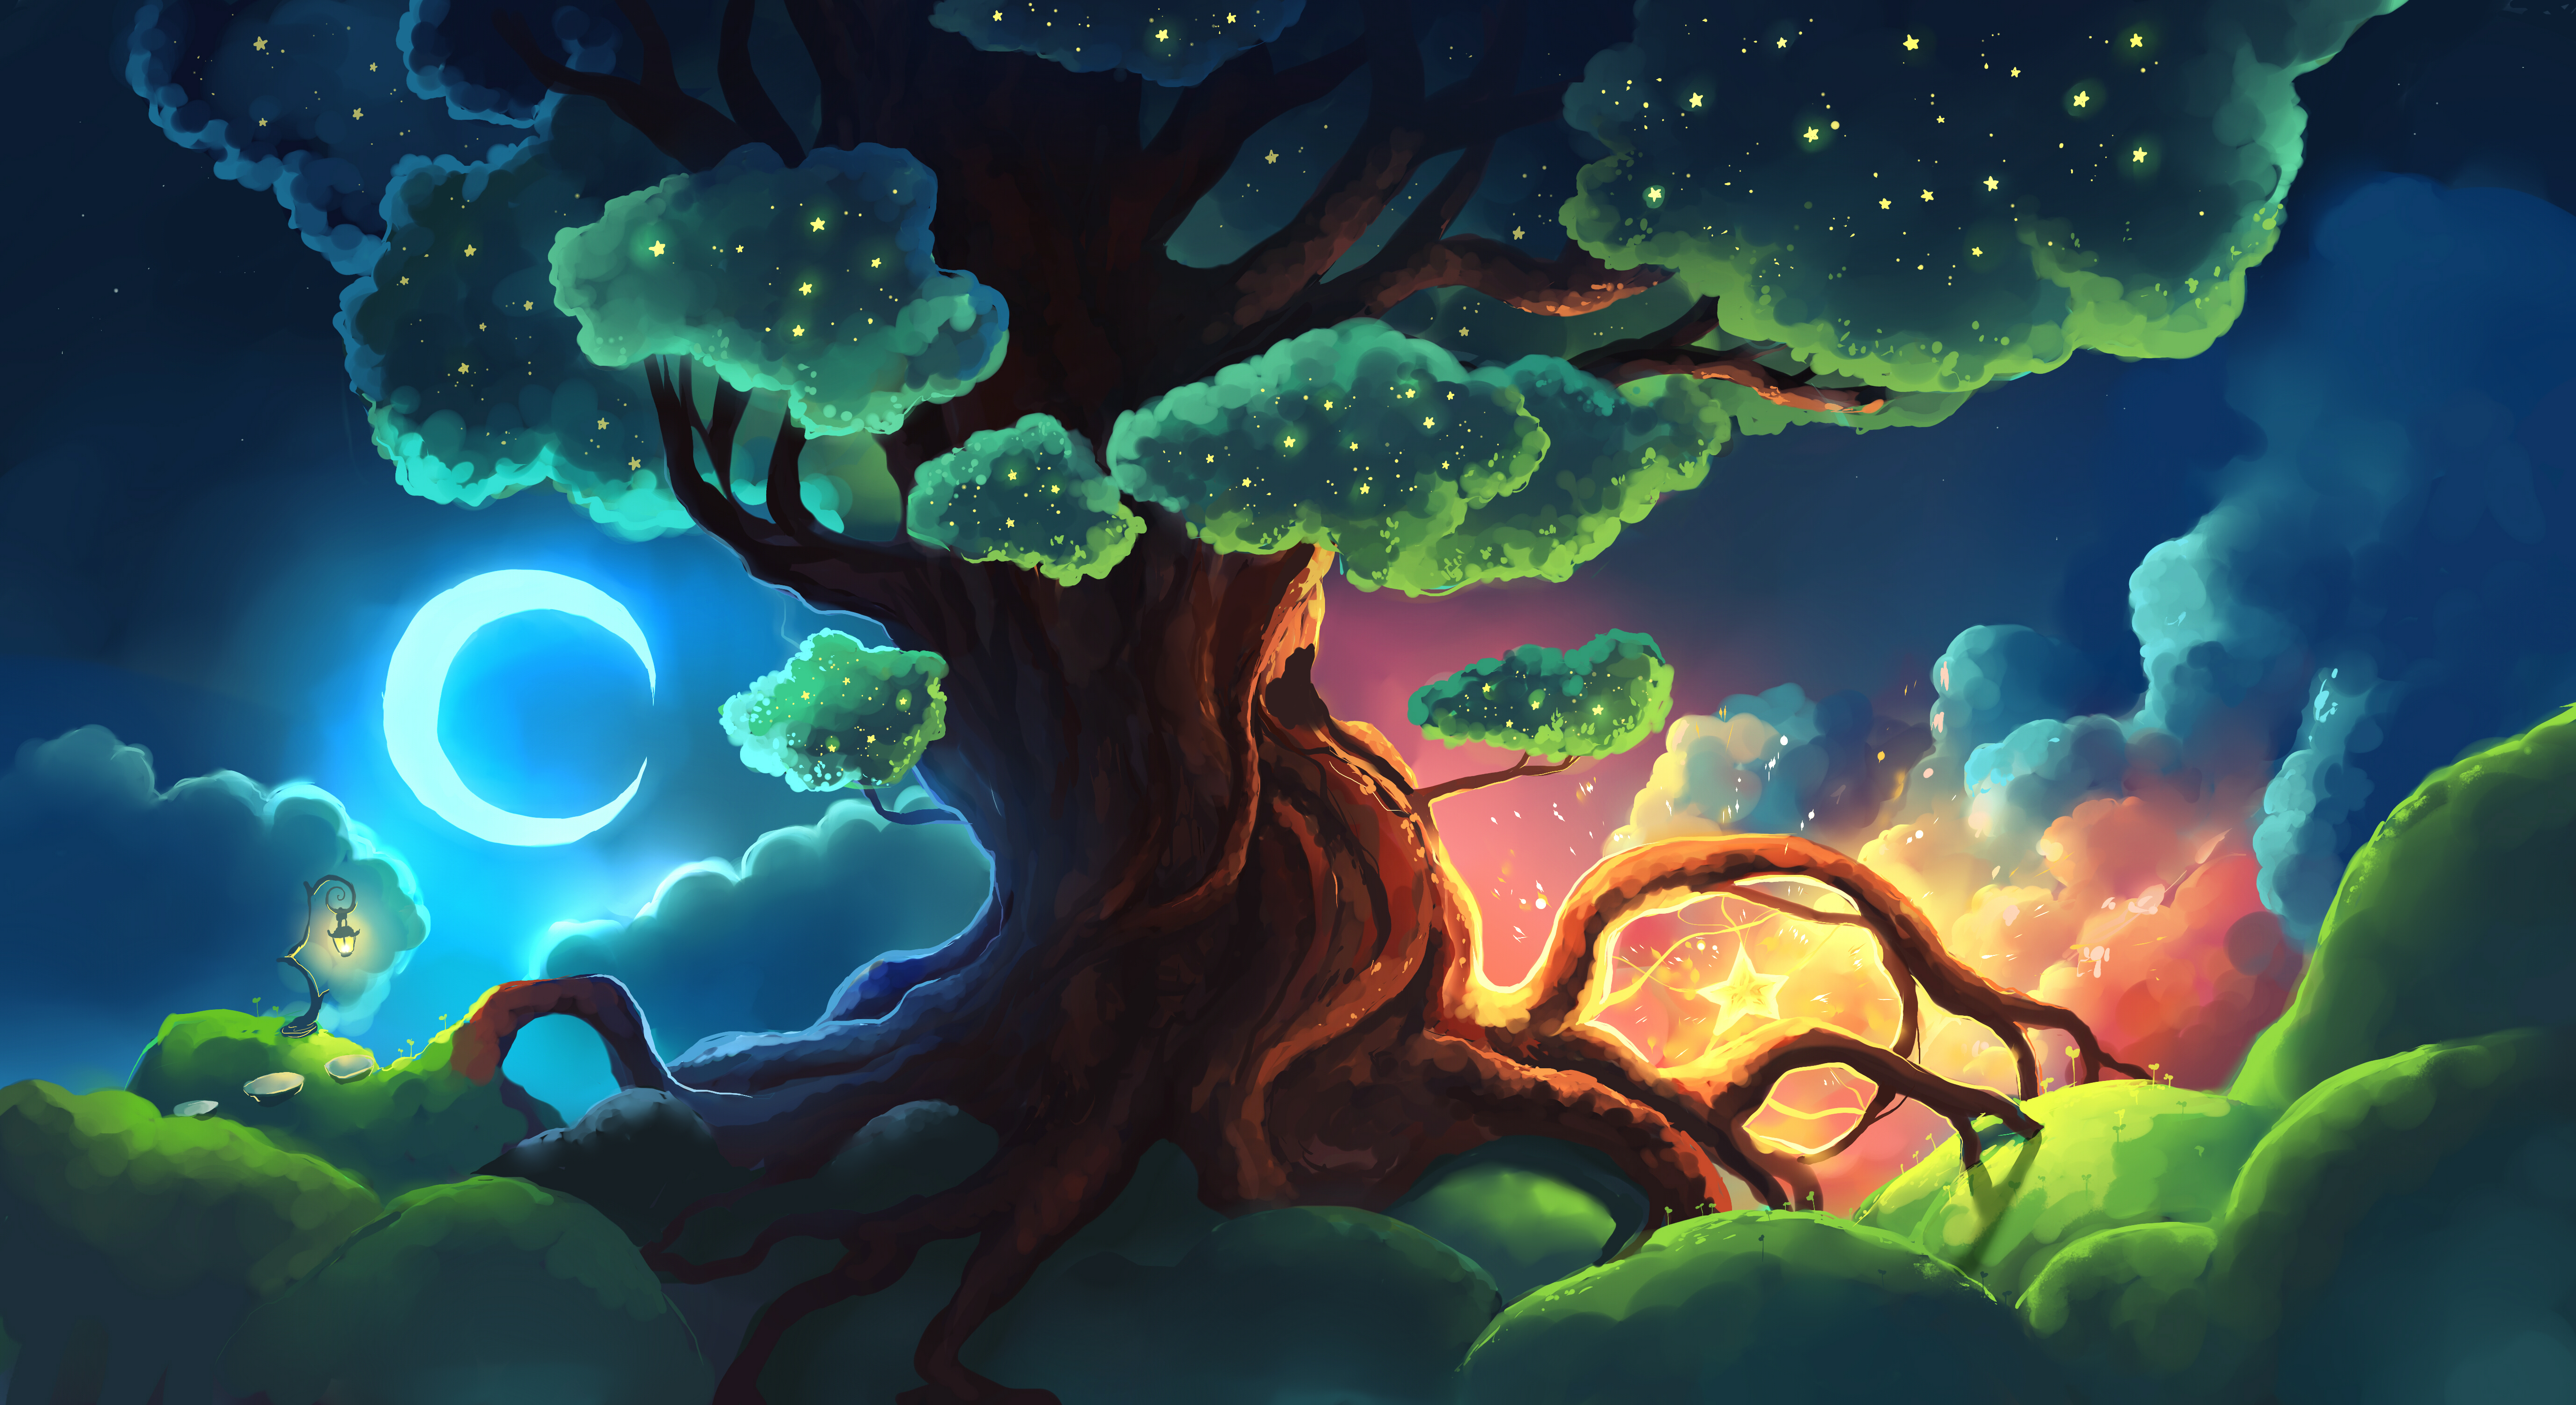 art, glow, stars, night, wood, tree